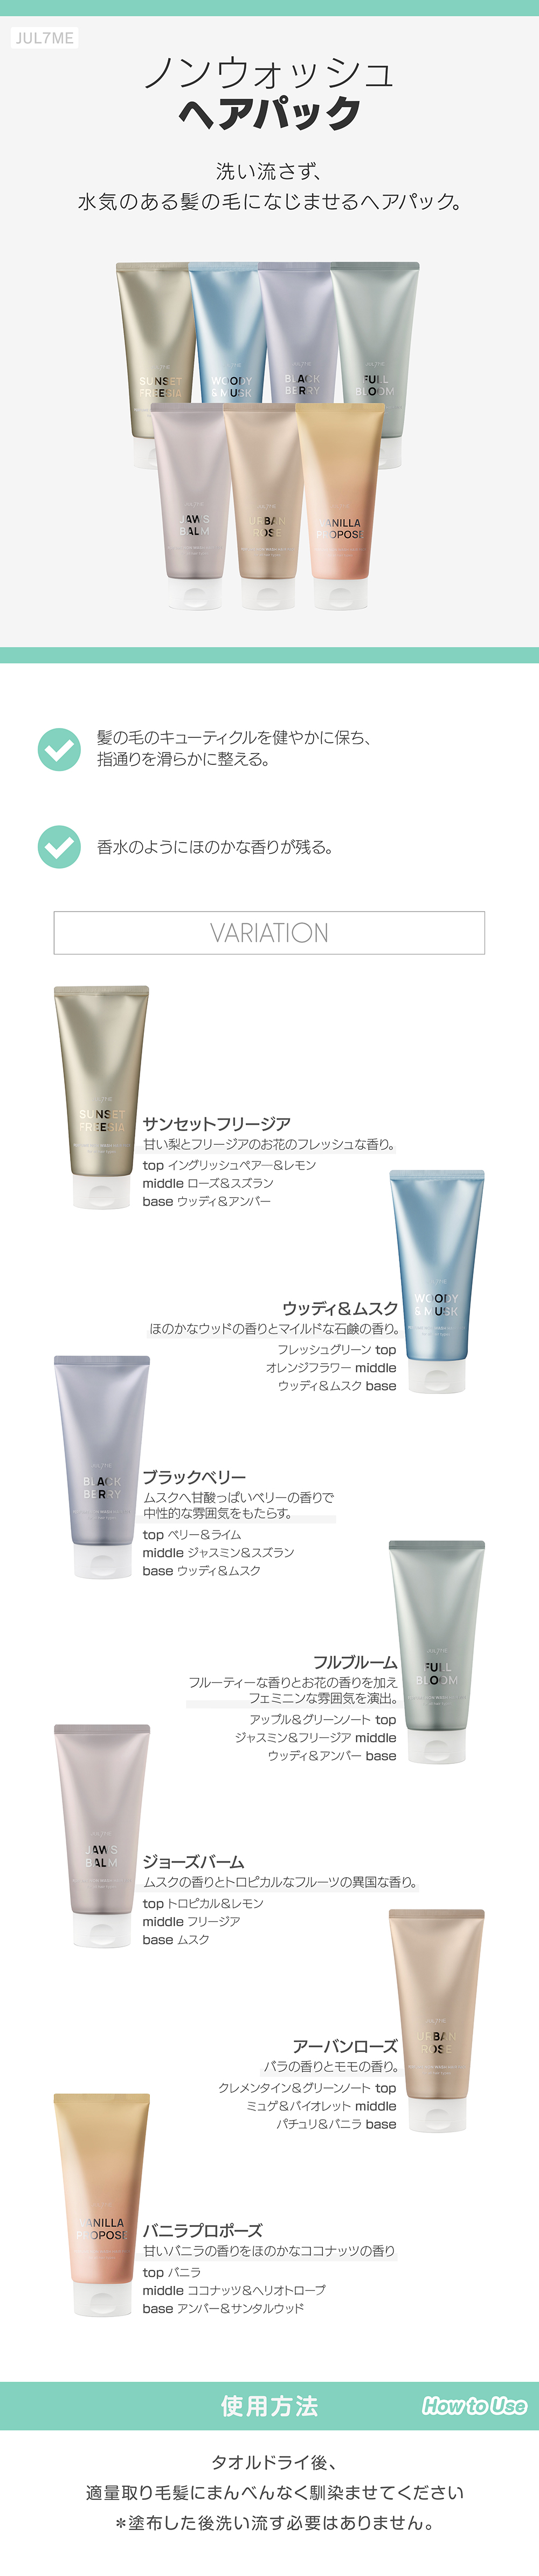 ノンウォッシュヘアパック skin holic 日本公式 オンラインショップ